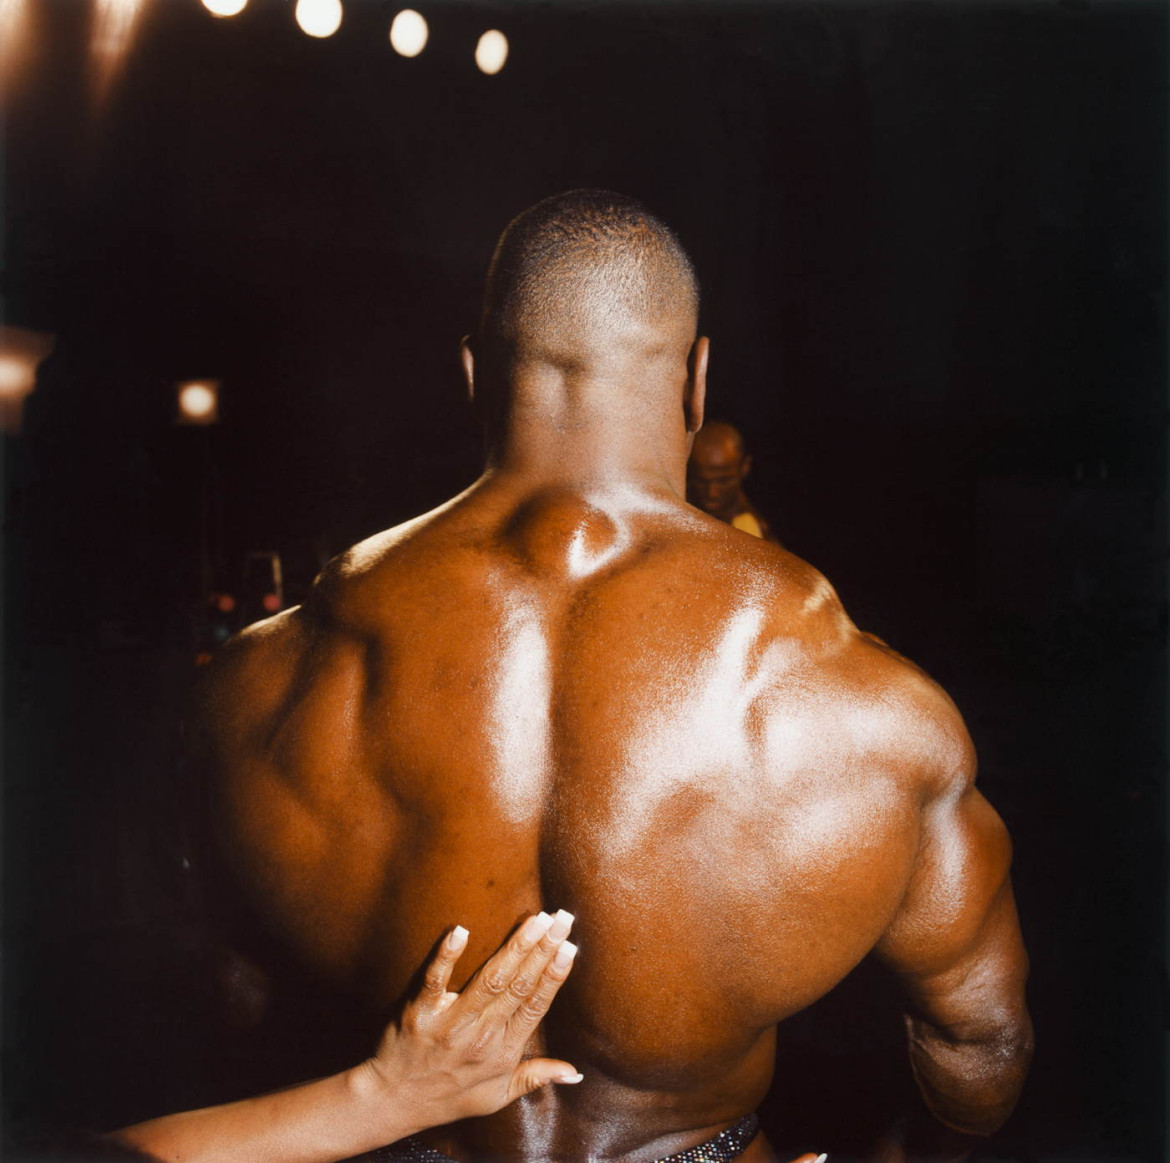 fot. Brian Finke, "Most Muscular"